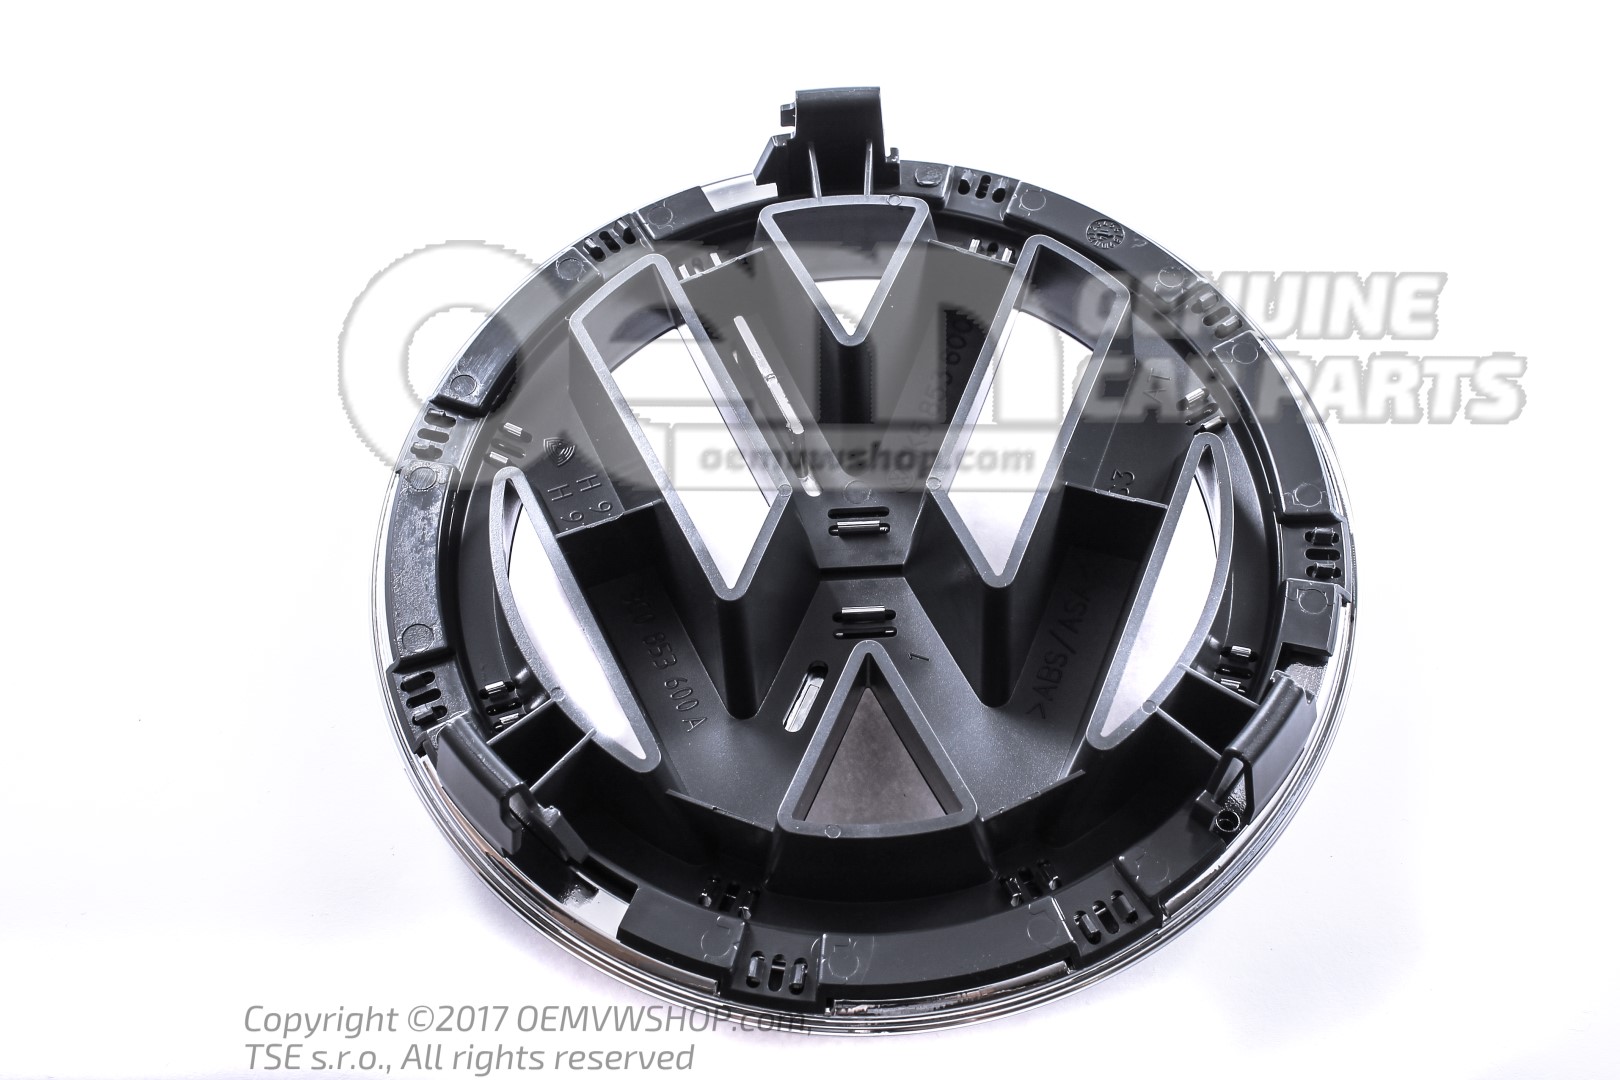 Neuf D'origine VW-Emblème Lettrage Logo Avant Chrome Brillant/anthracite 3d7853600 mqh